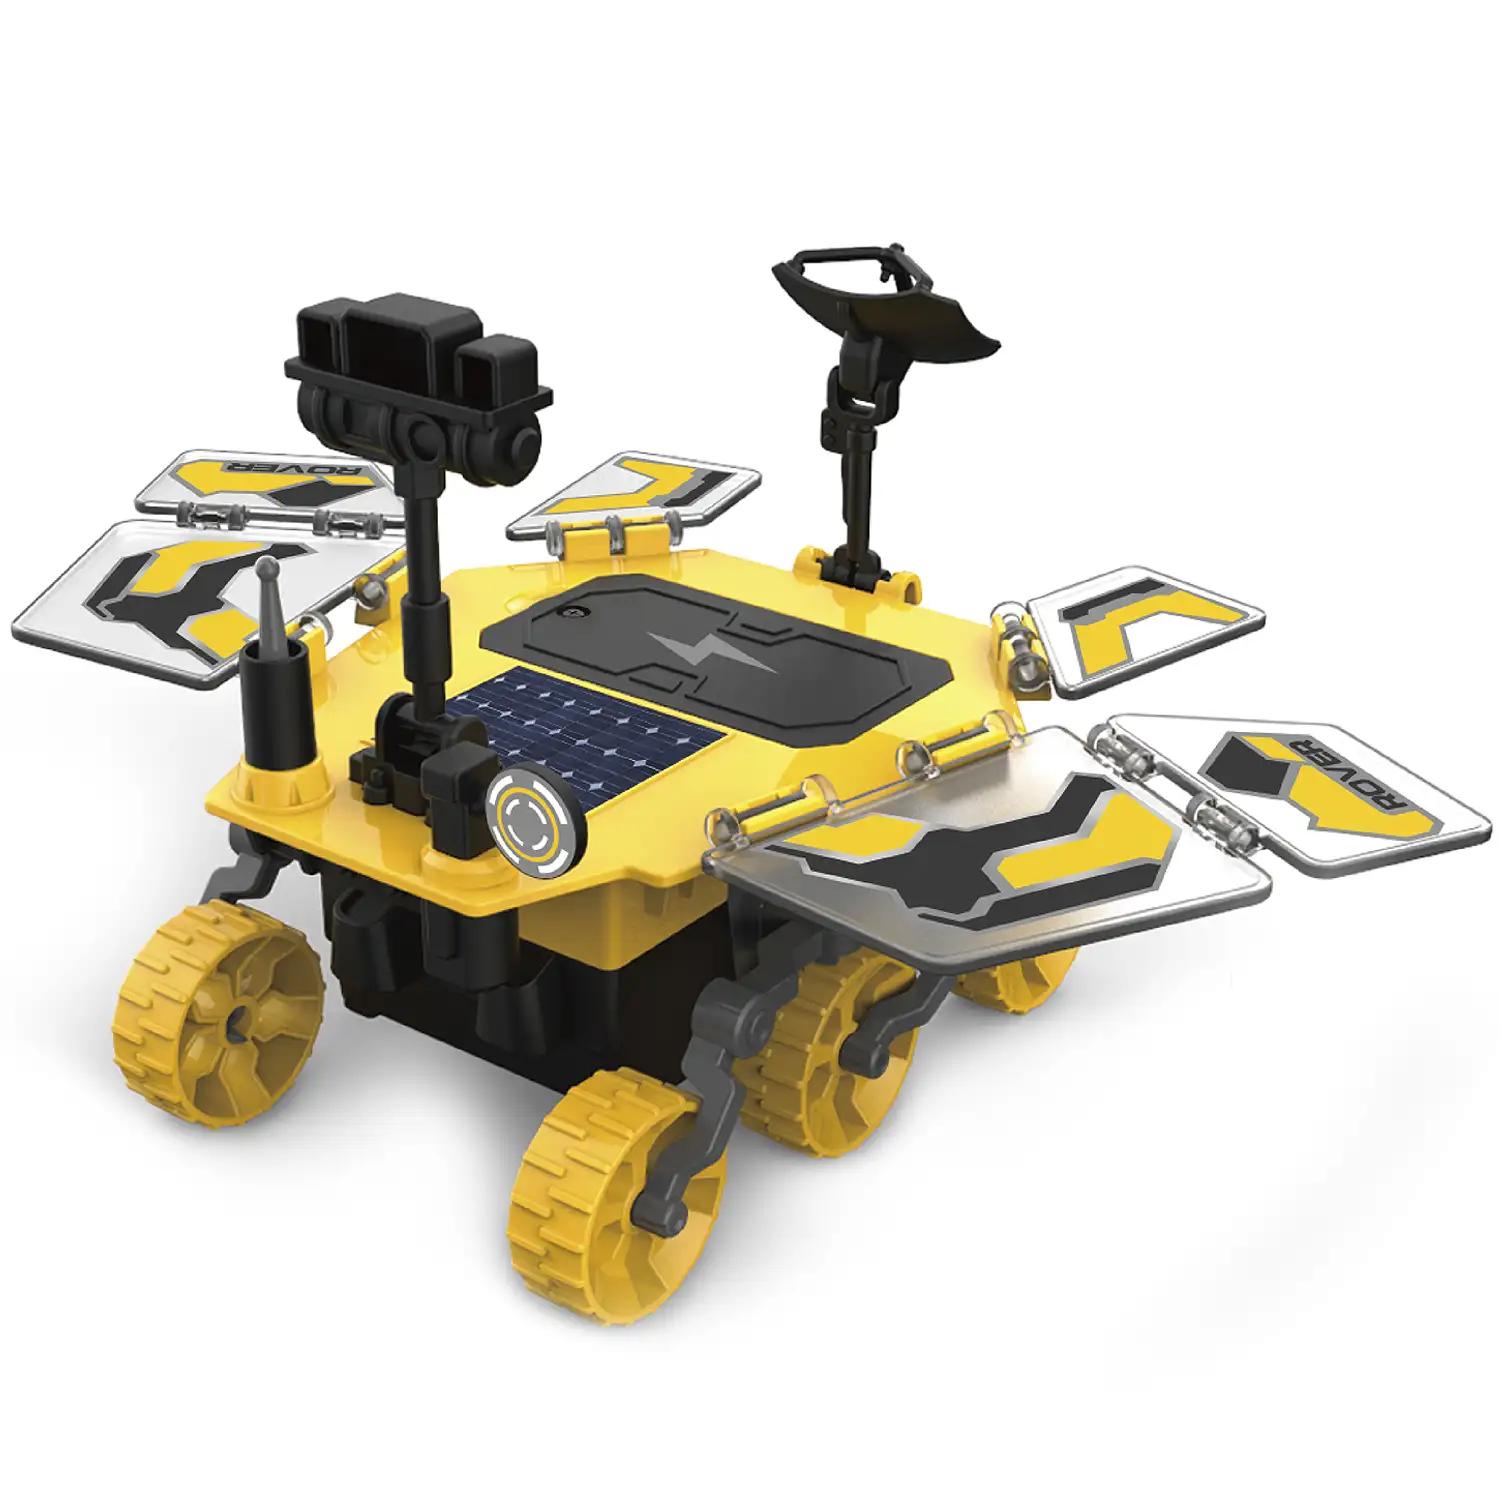 Rover de Marte para construir. 46 piezas. Funcionamiento solar y por batería.